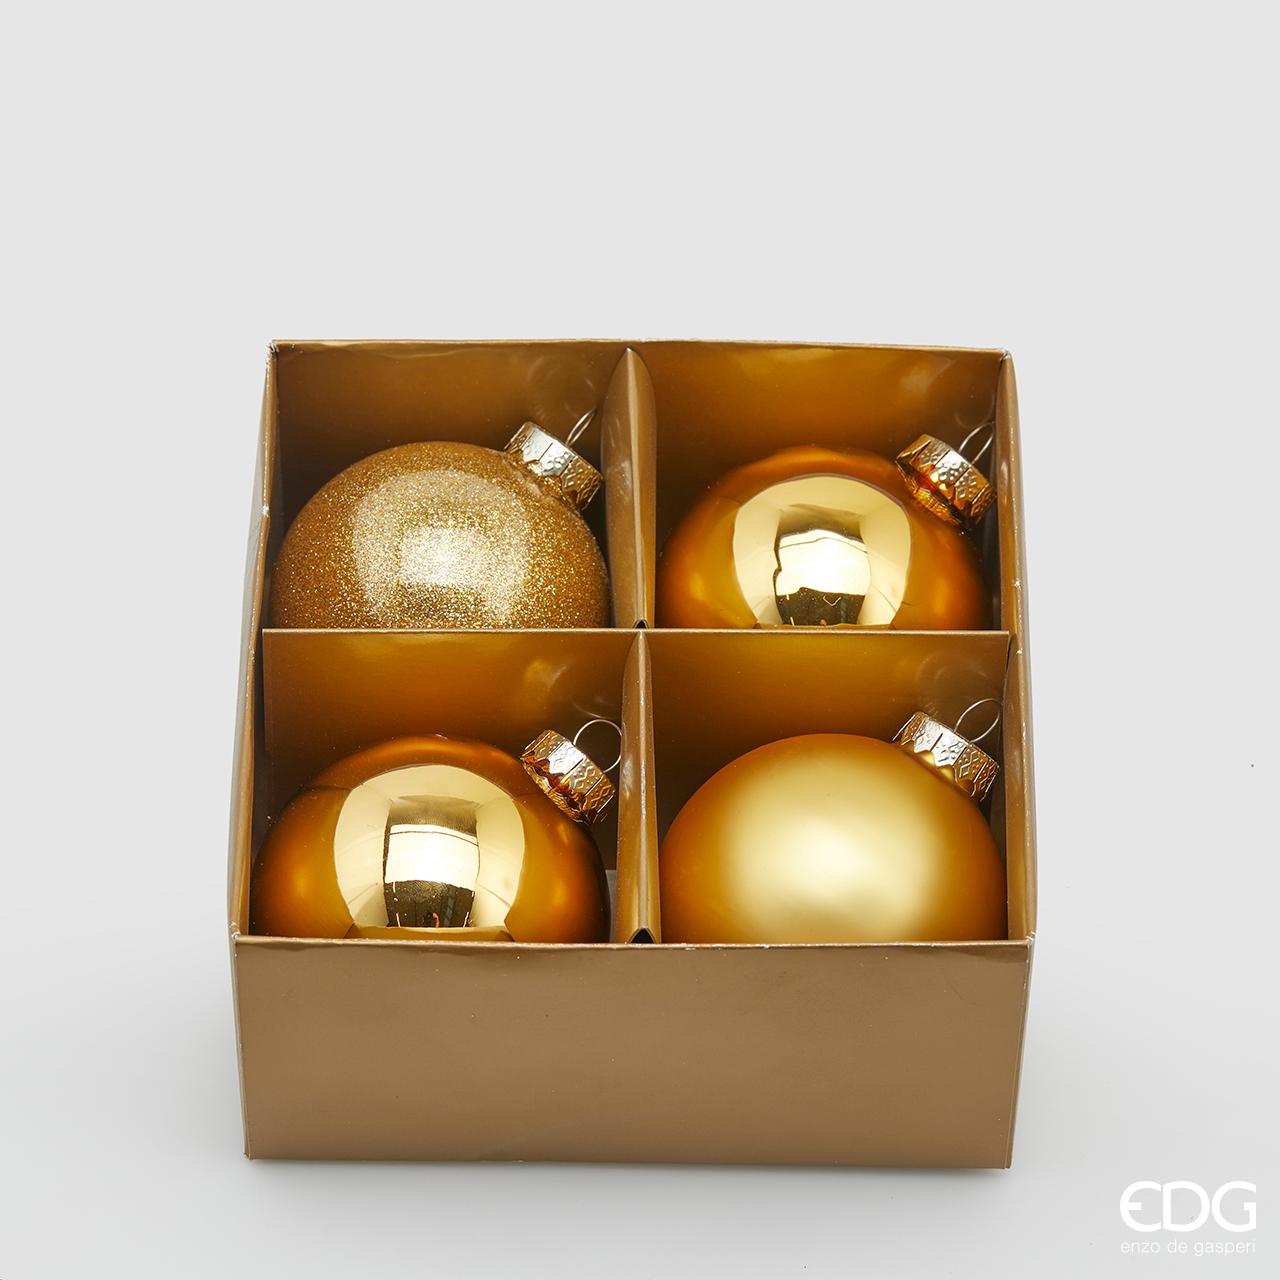 Confezione di 4 palline in vetro di colore oro (2 lucide, 1 opaca e 1 glitterata) con diametro di 8 cm. In negozio e online su tuttochic.it